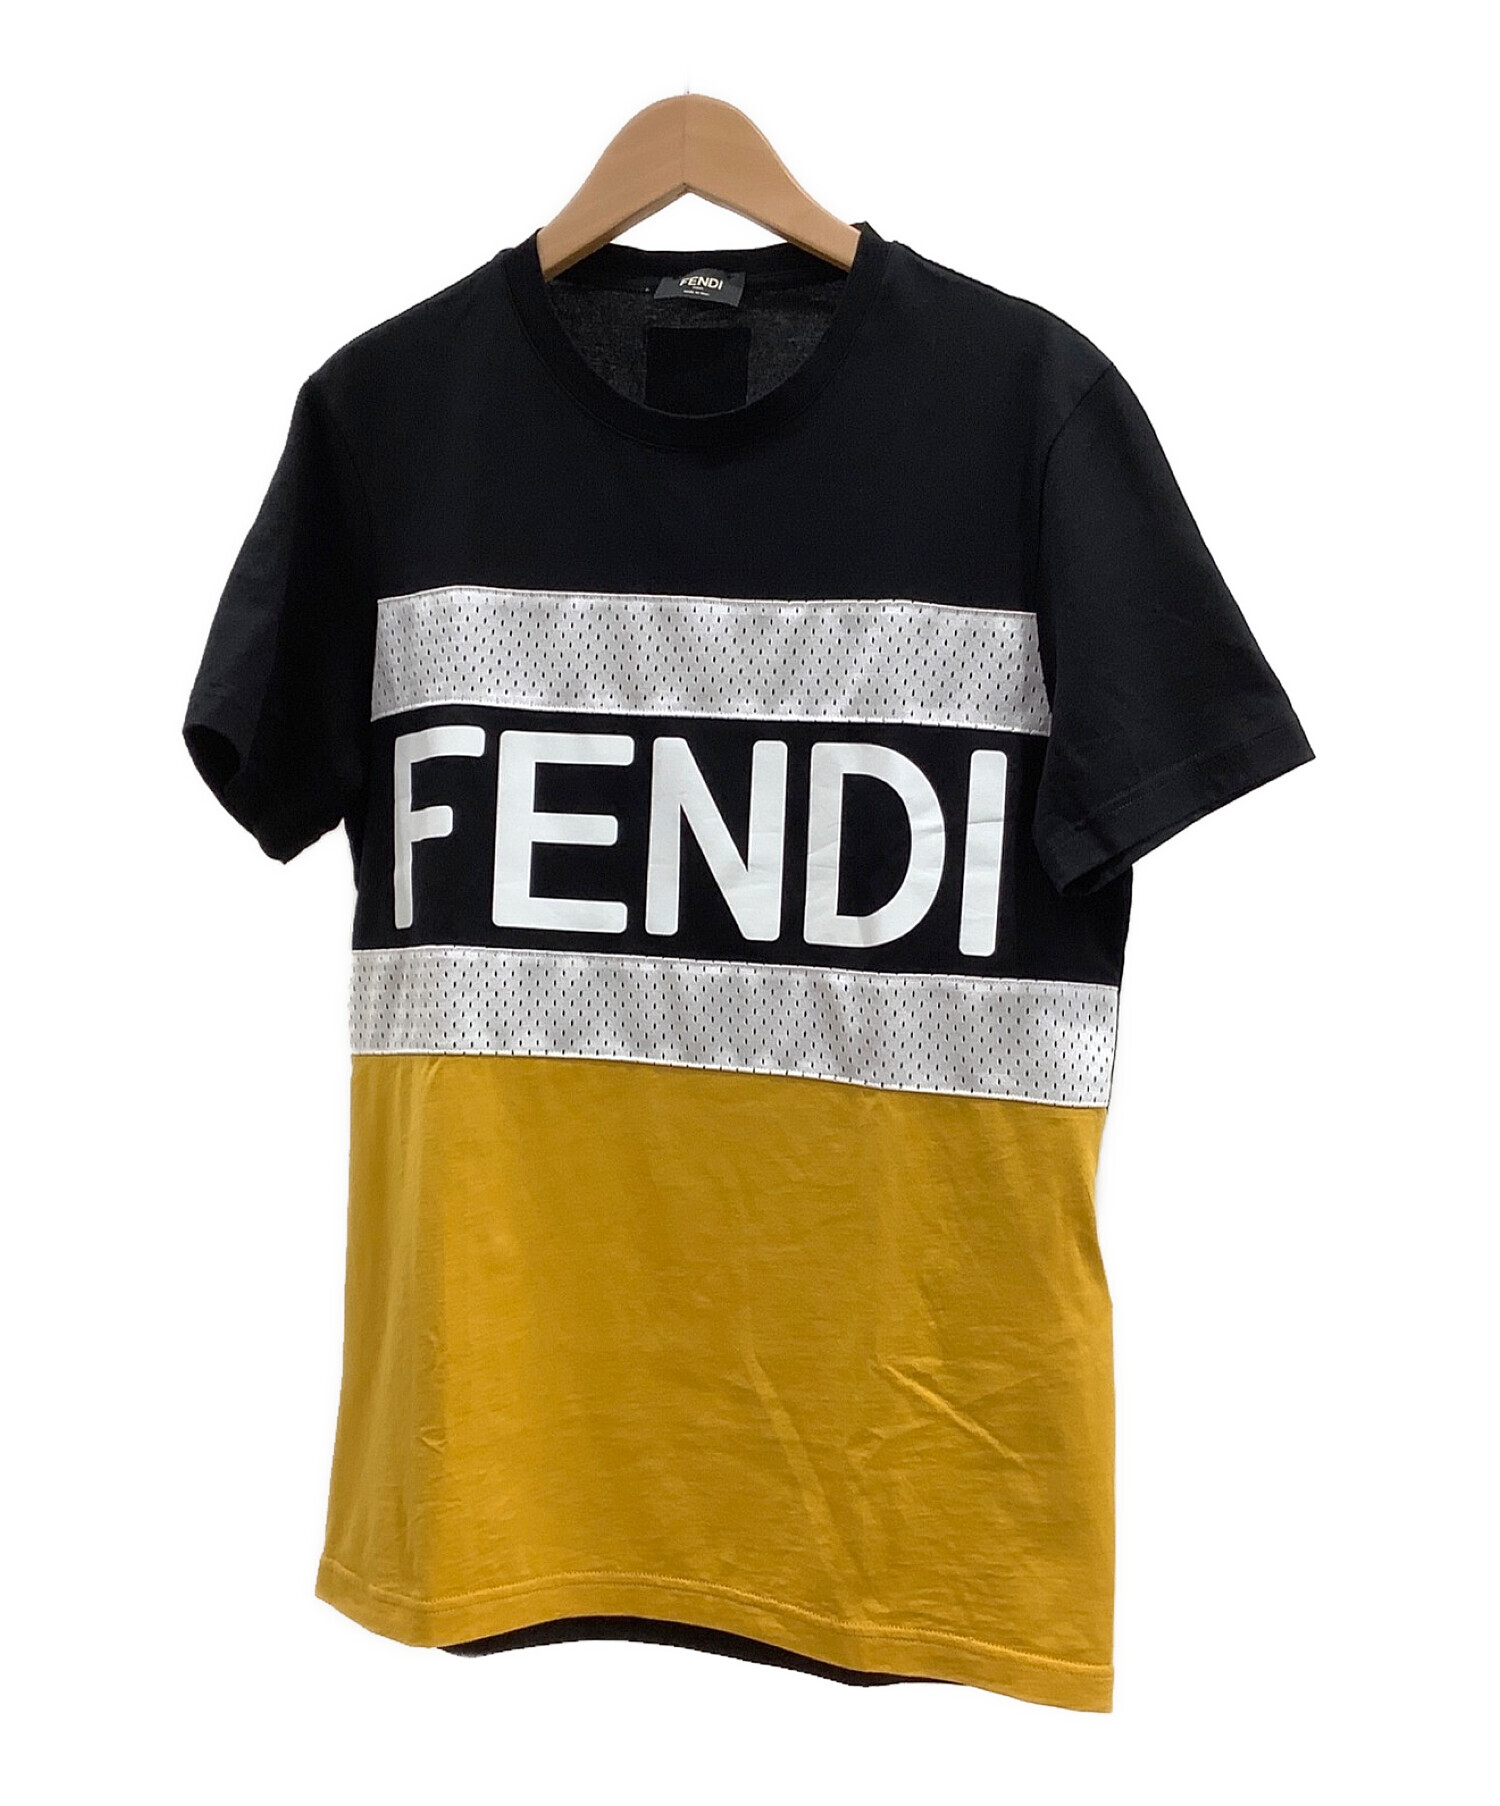 FENDI (フェンディ) クルーネックTシャツ ブラック×イエロー サイズ:S